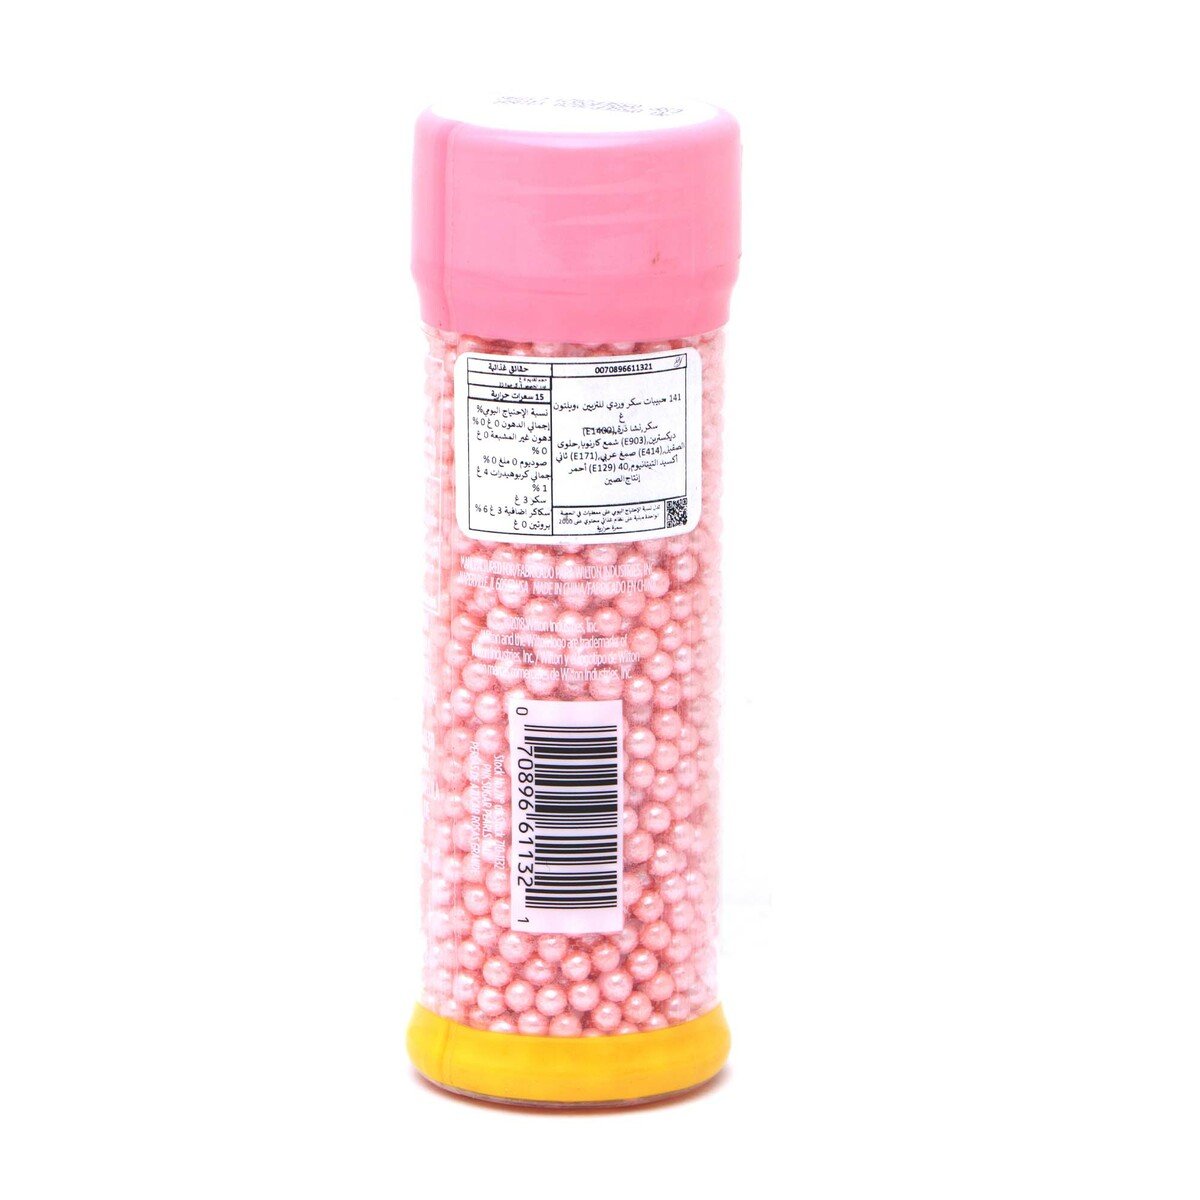 Wilton Sprinkles Pink Sugar Pearls 141g